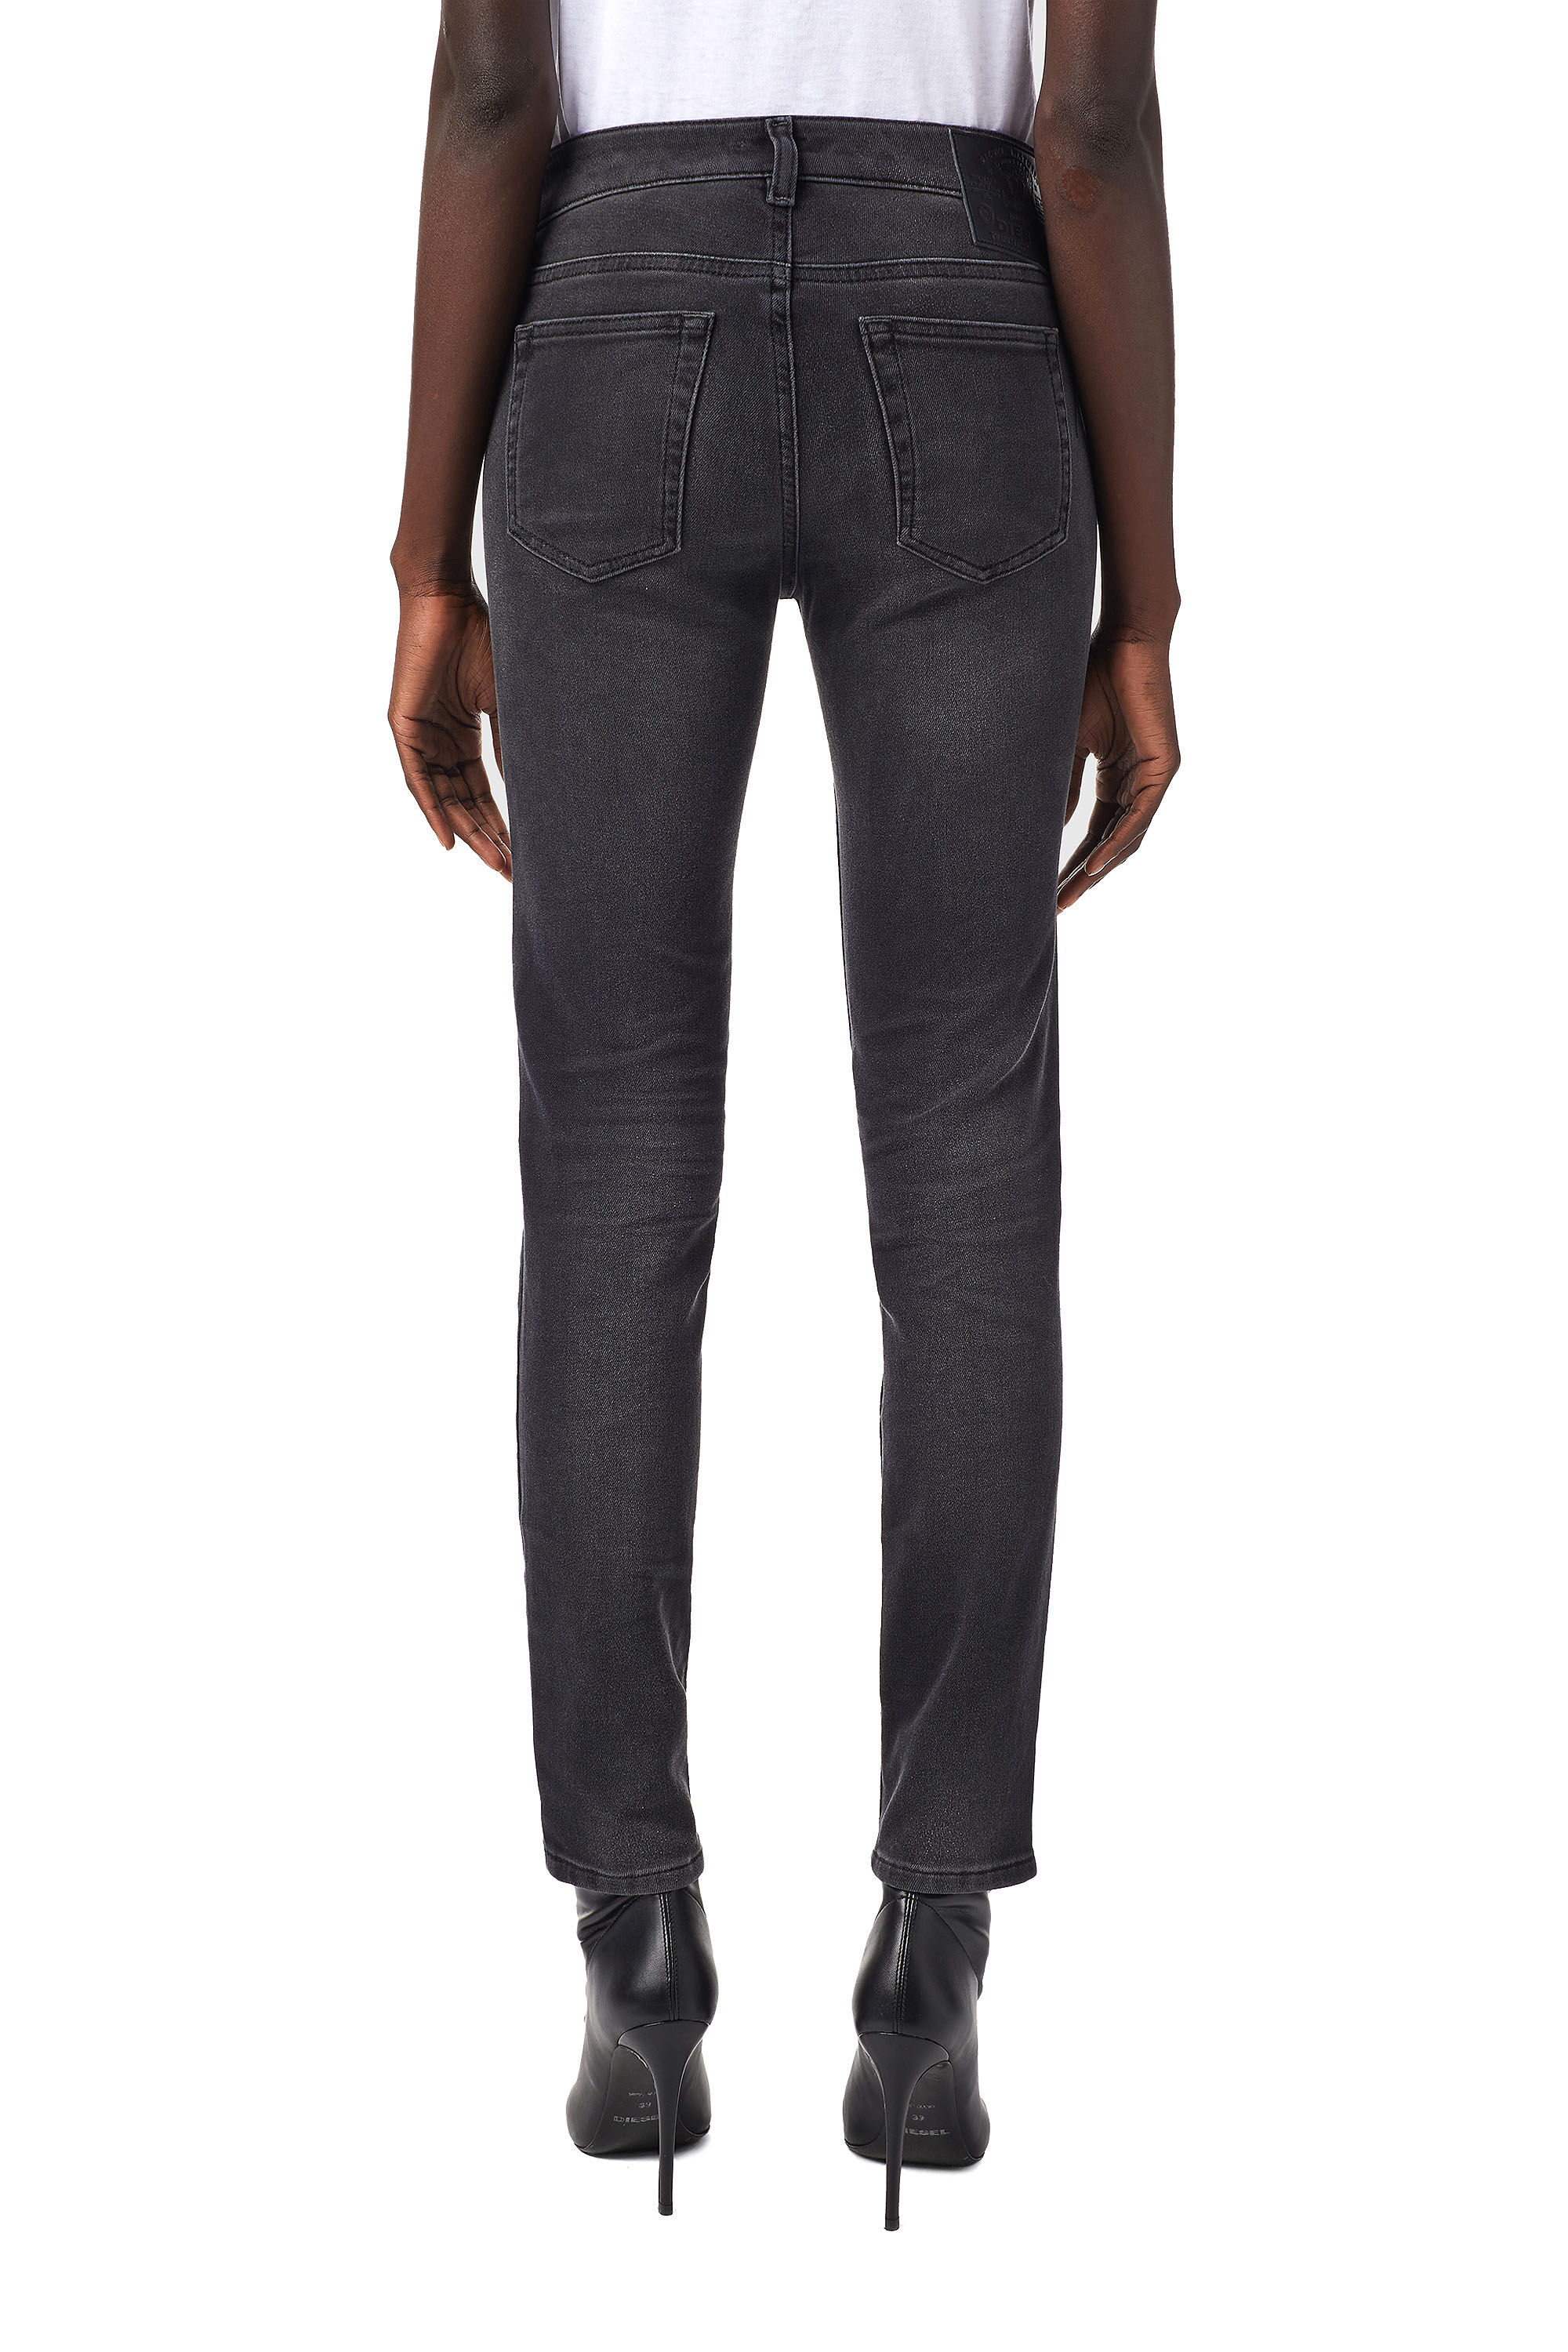 Diesel - D-Ollies JoggJeans® 09B22 Slim, Black/Dark Grey - Image 5